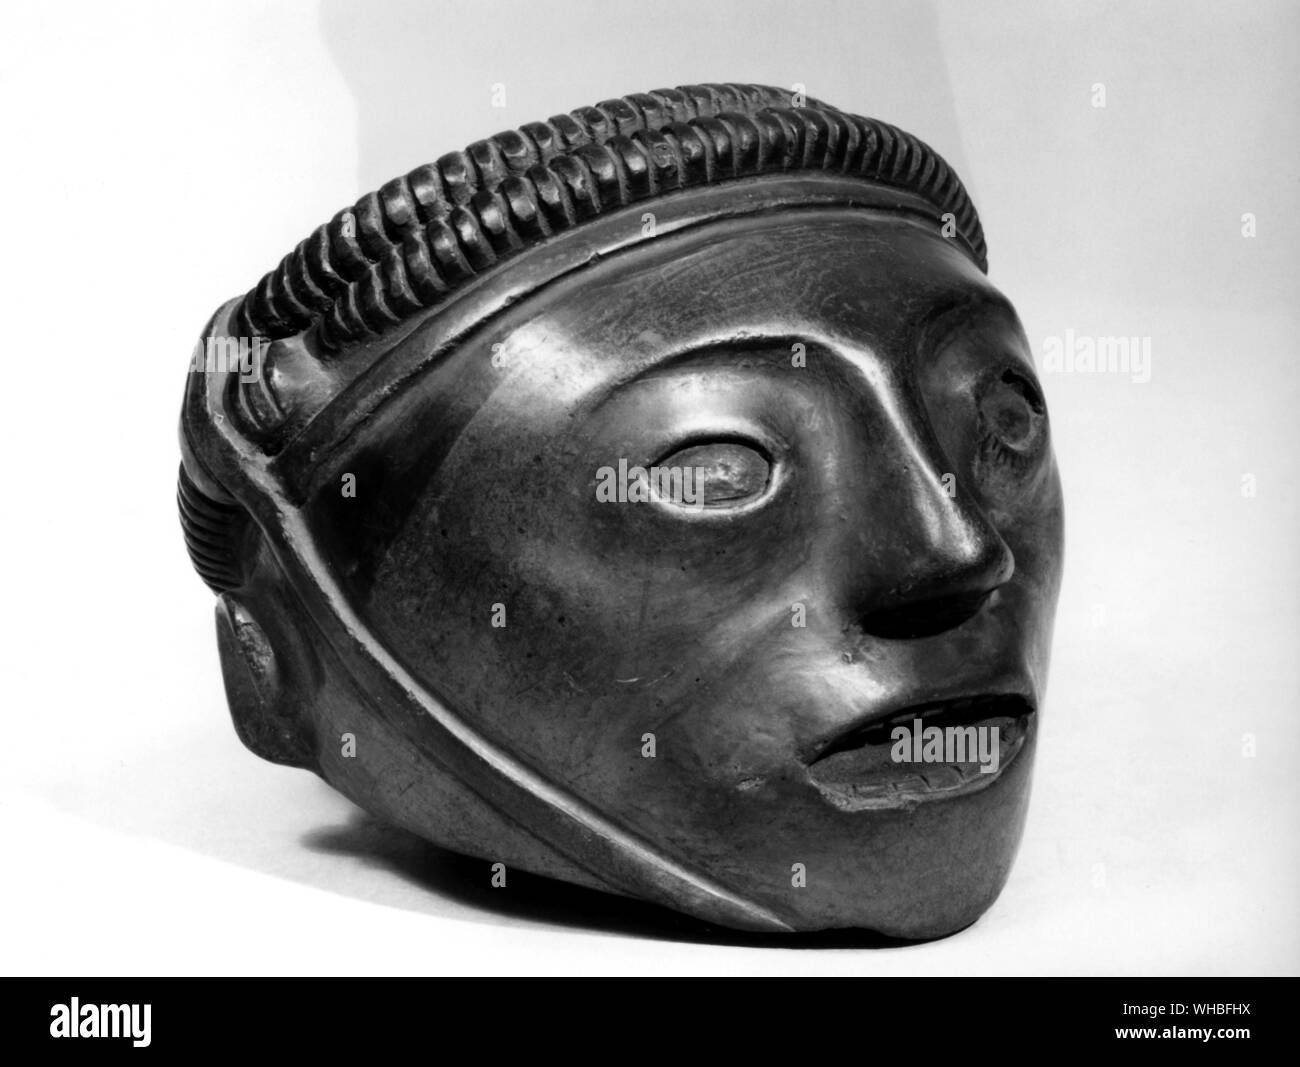 Keramik Vase, eine mumifizierte Kopf mit Augen und Mund gestopft. Das Kinn ist in Position, die von einem Riemen gehalten. Nazca Menschen wurden in diesem Stil gefunden. Stockfoto